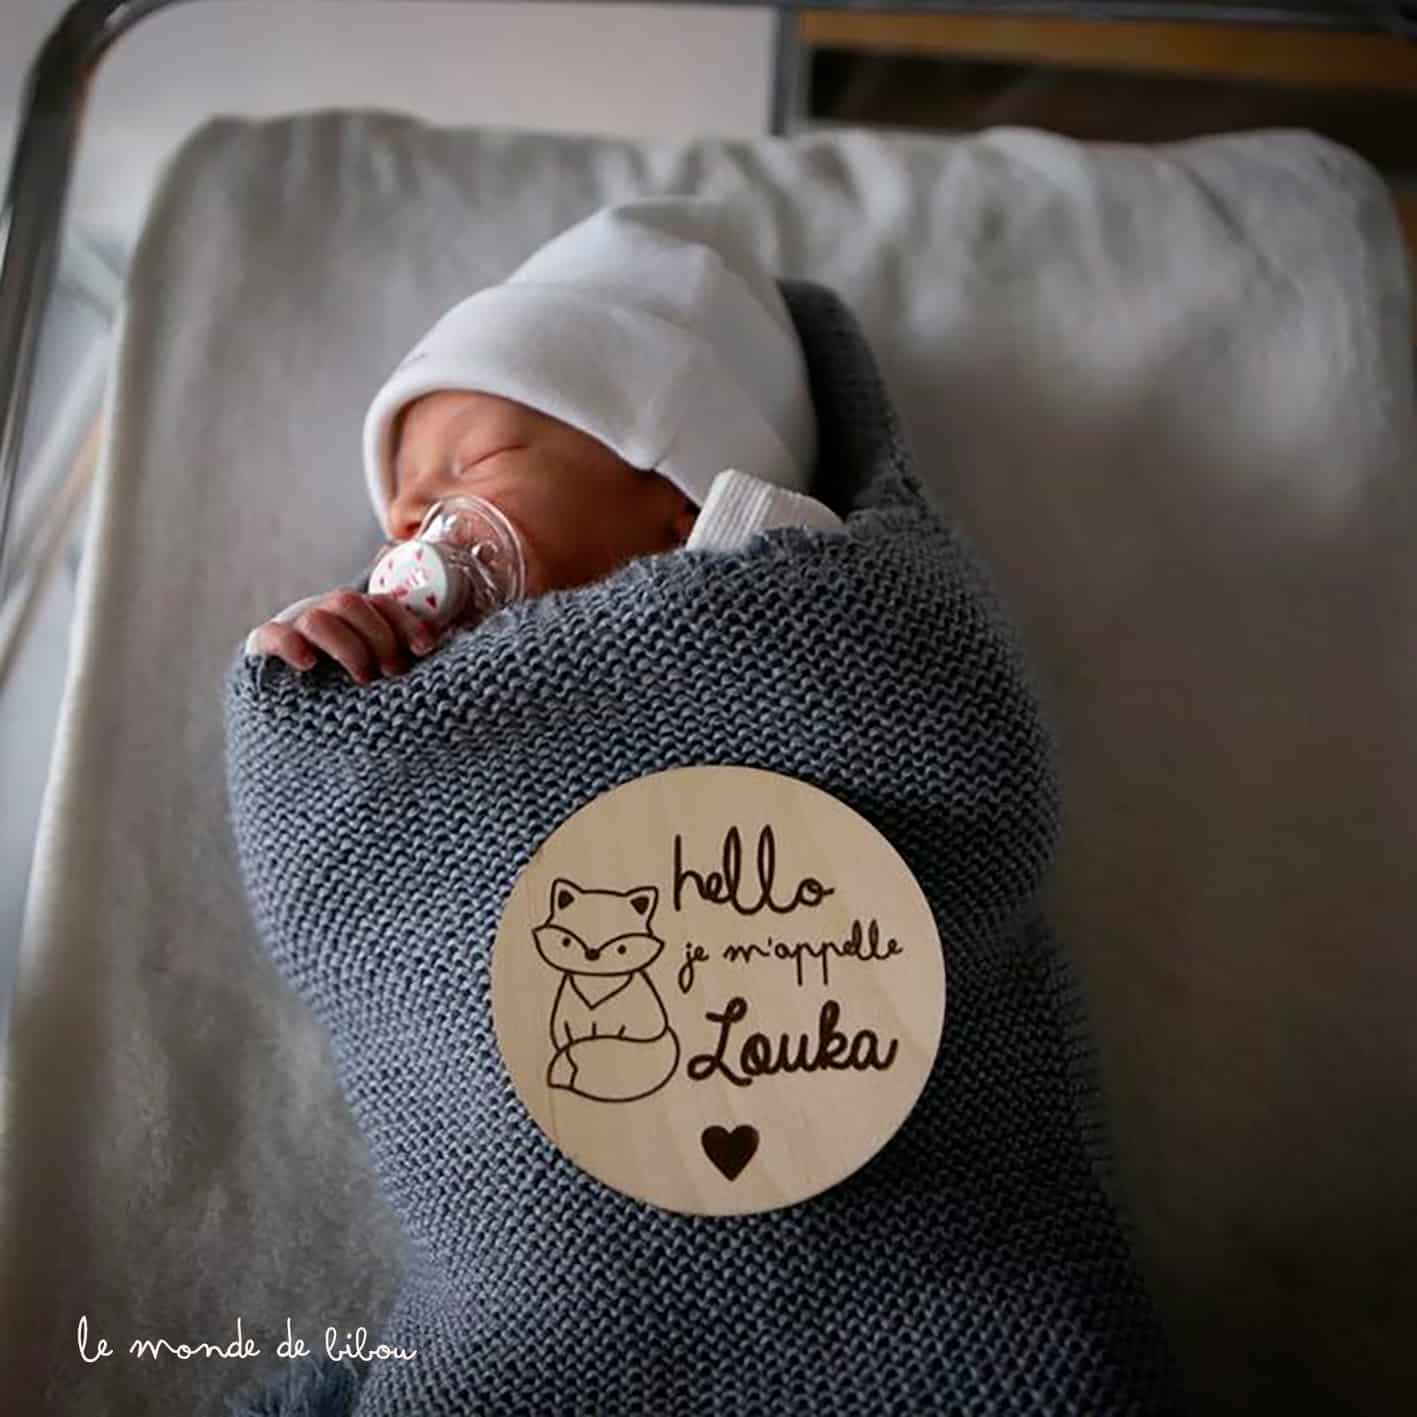 Panneau d'annonce de naissance Mikilon World - Plaque en bois pour le nom  du bébé et les détails de la naissance 